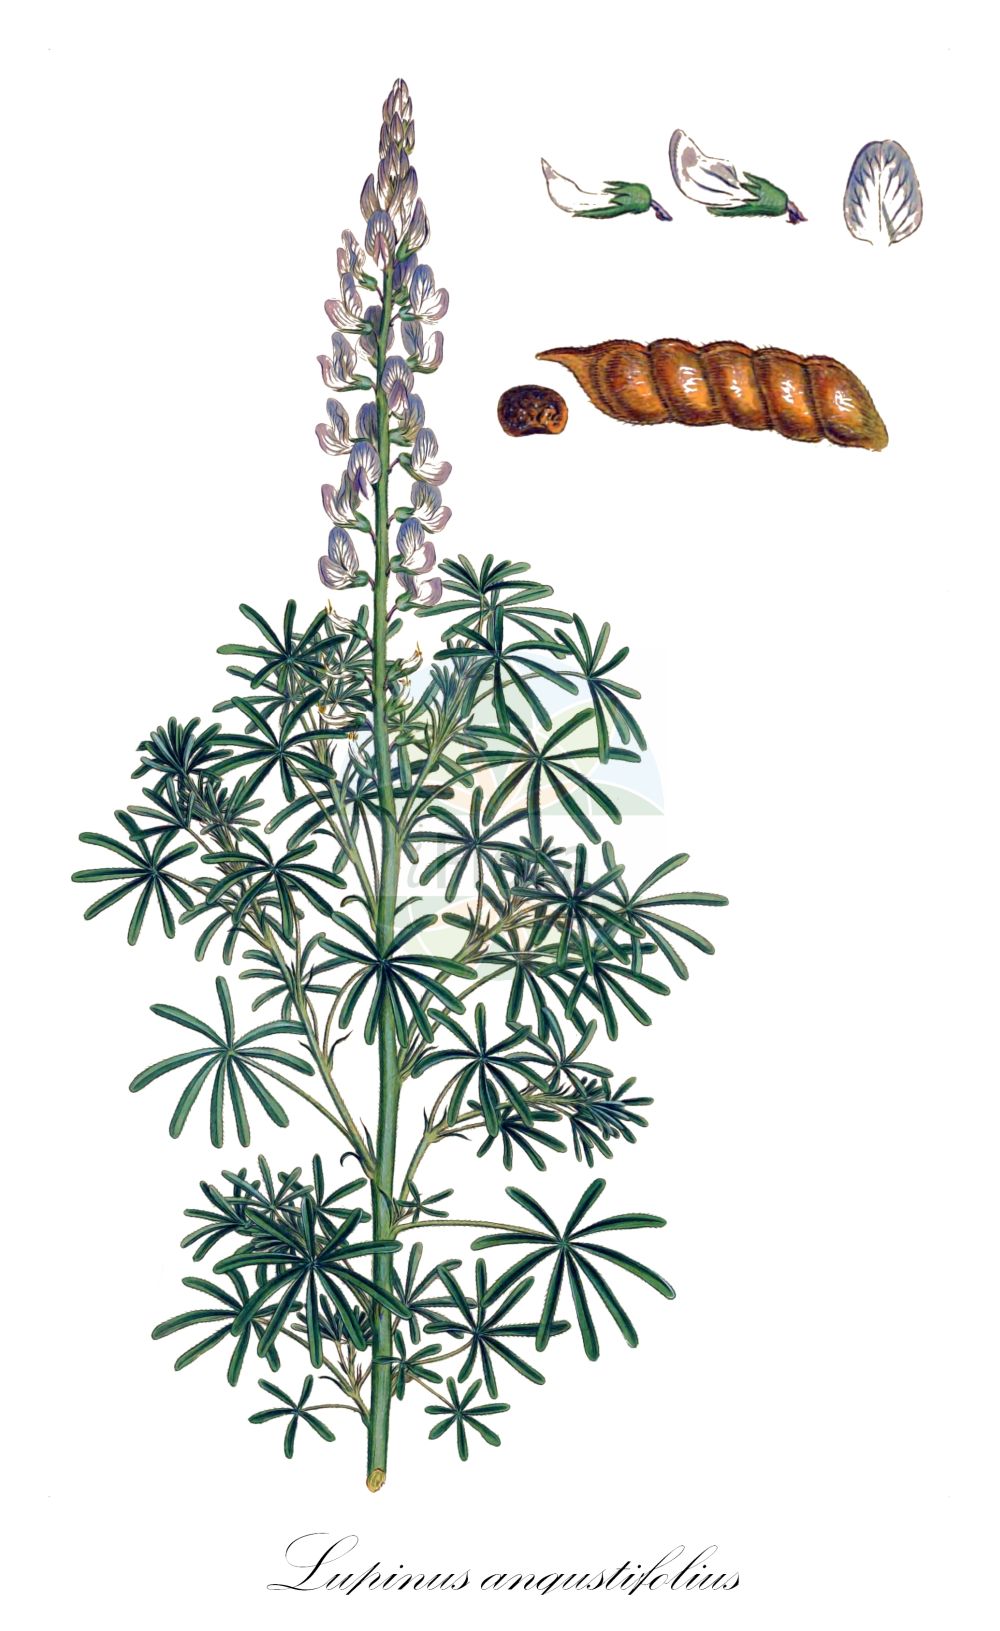 Historische Abbildung von Lupinus angustifolius (Blaue Lupine - Narrow-leaved Lupin). Das Bild zeigt Blatt, Bluete, Frucht und Same. ---- Historical Drawing of Lupinus angustifolius (Blaue Lupine - Narrow-leaved Lupin). The image is showing leaf, flower, fruit and seed.(Lupinus angustifolius,Blaue Lupine,Narrow-leaved Lupin,Lupinus angustifolius,Blaue Lupine,Schmalblaettrige Lupine,Narrow-leaved Lupin,Blue Lupin,Narrowleaf Lupine,Blue Lupine,Annual Lupin,Foxtail Lupin,Lupinus,Lupine,Lupine,Fabaceae,Schmetterlingsblütler,Pea family,Blatt,Bluete,Frucht,Same,leaf,flower,fruit,seed,Sibthorp & Smith (1806-1840))